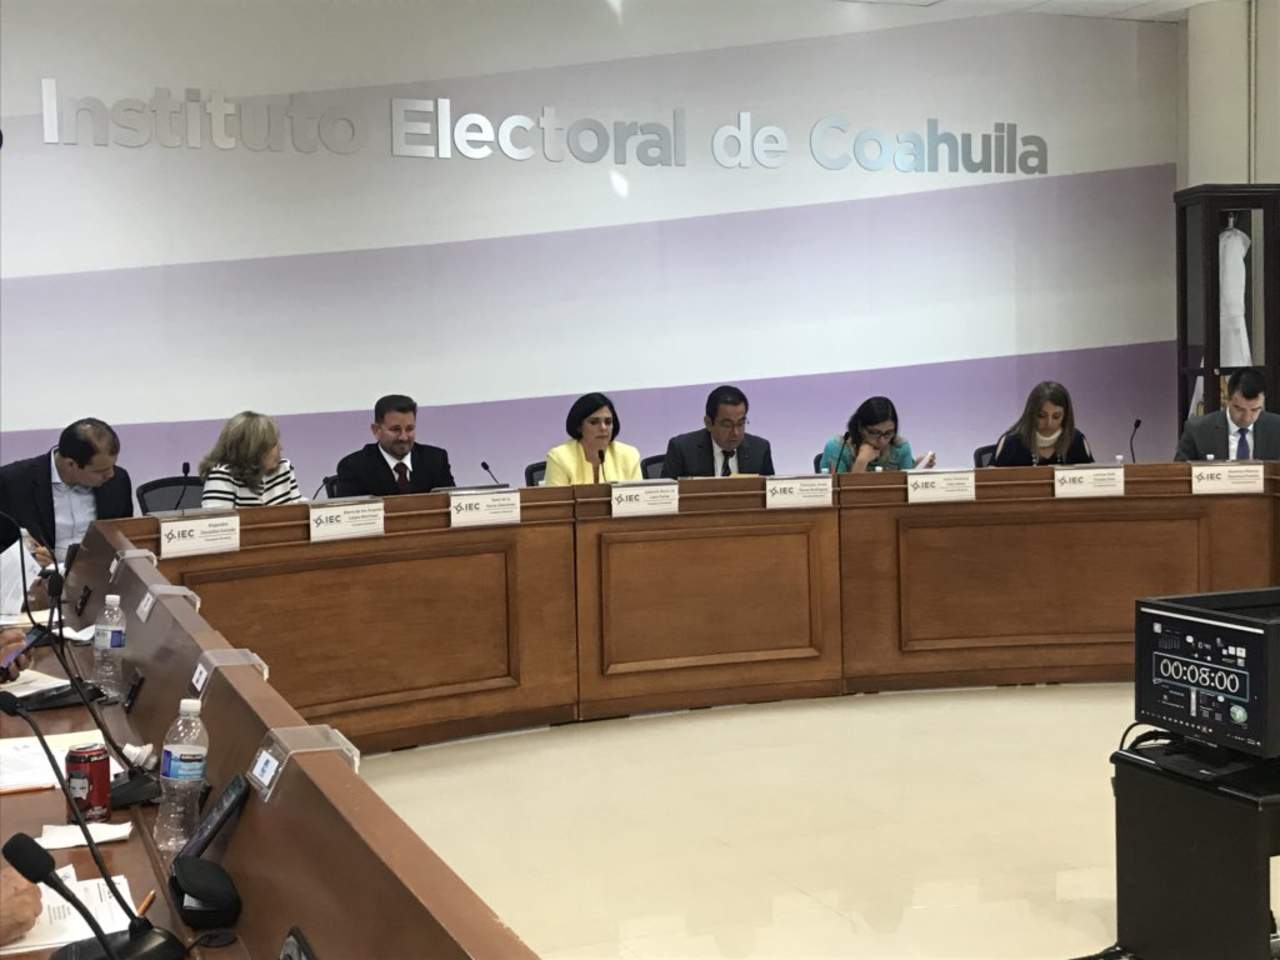 El Consejo General del Instituto Electoral de Coahuila (IEC) castigó sólo con una amonestación pública y una multa no mayor a 700 pesos. (TWITTER)